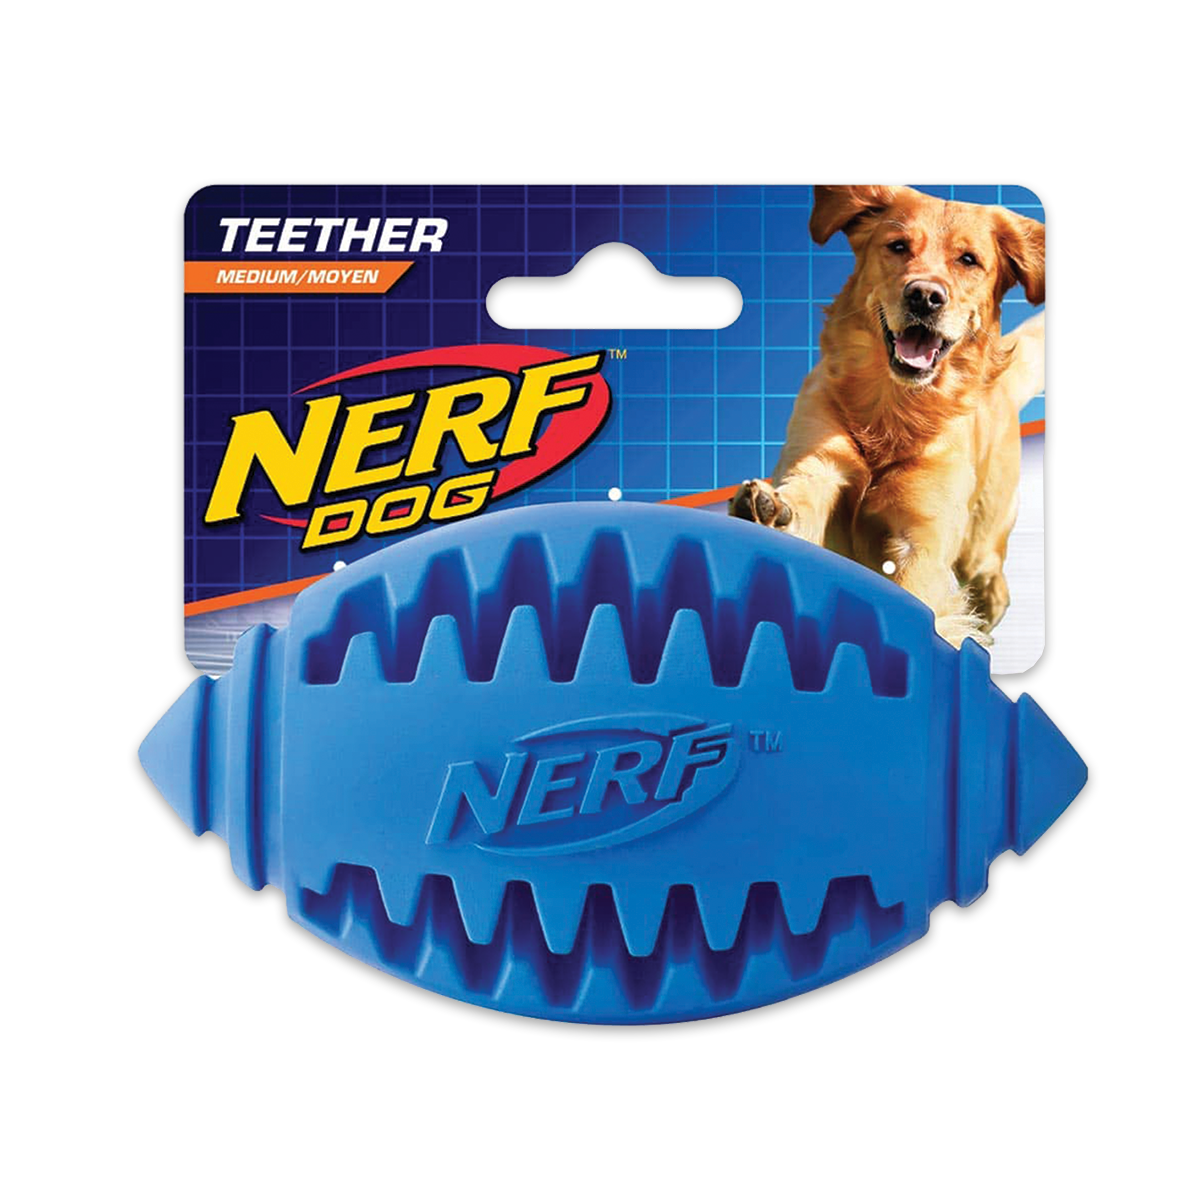 Nerf Dog Teether Football, Medium เนิร์ฟด็อก ลูกอเมริกันฟุตบอลขัดฟัน ขนาด 4 นิ้ว